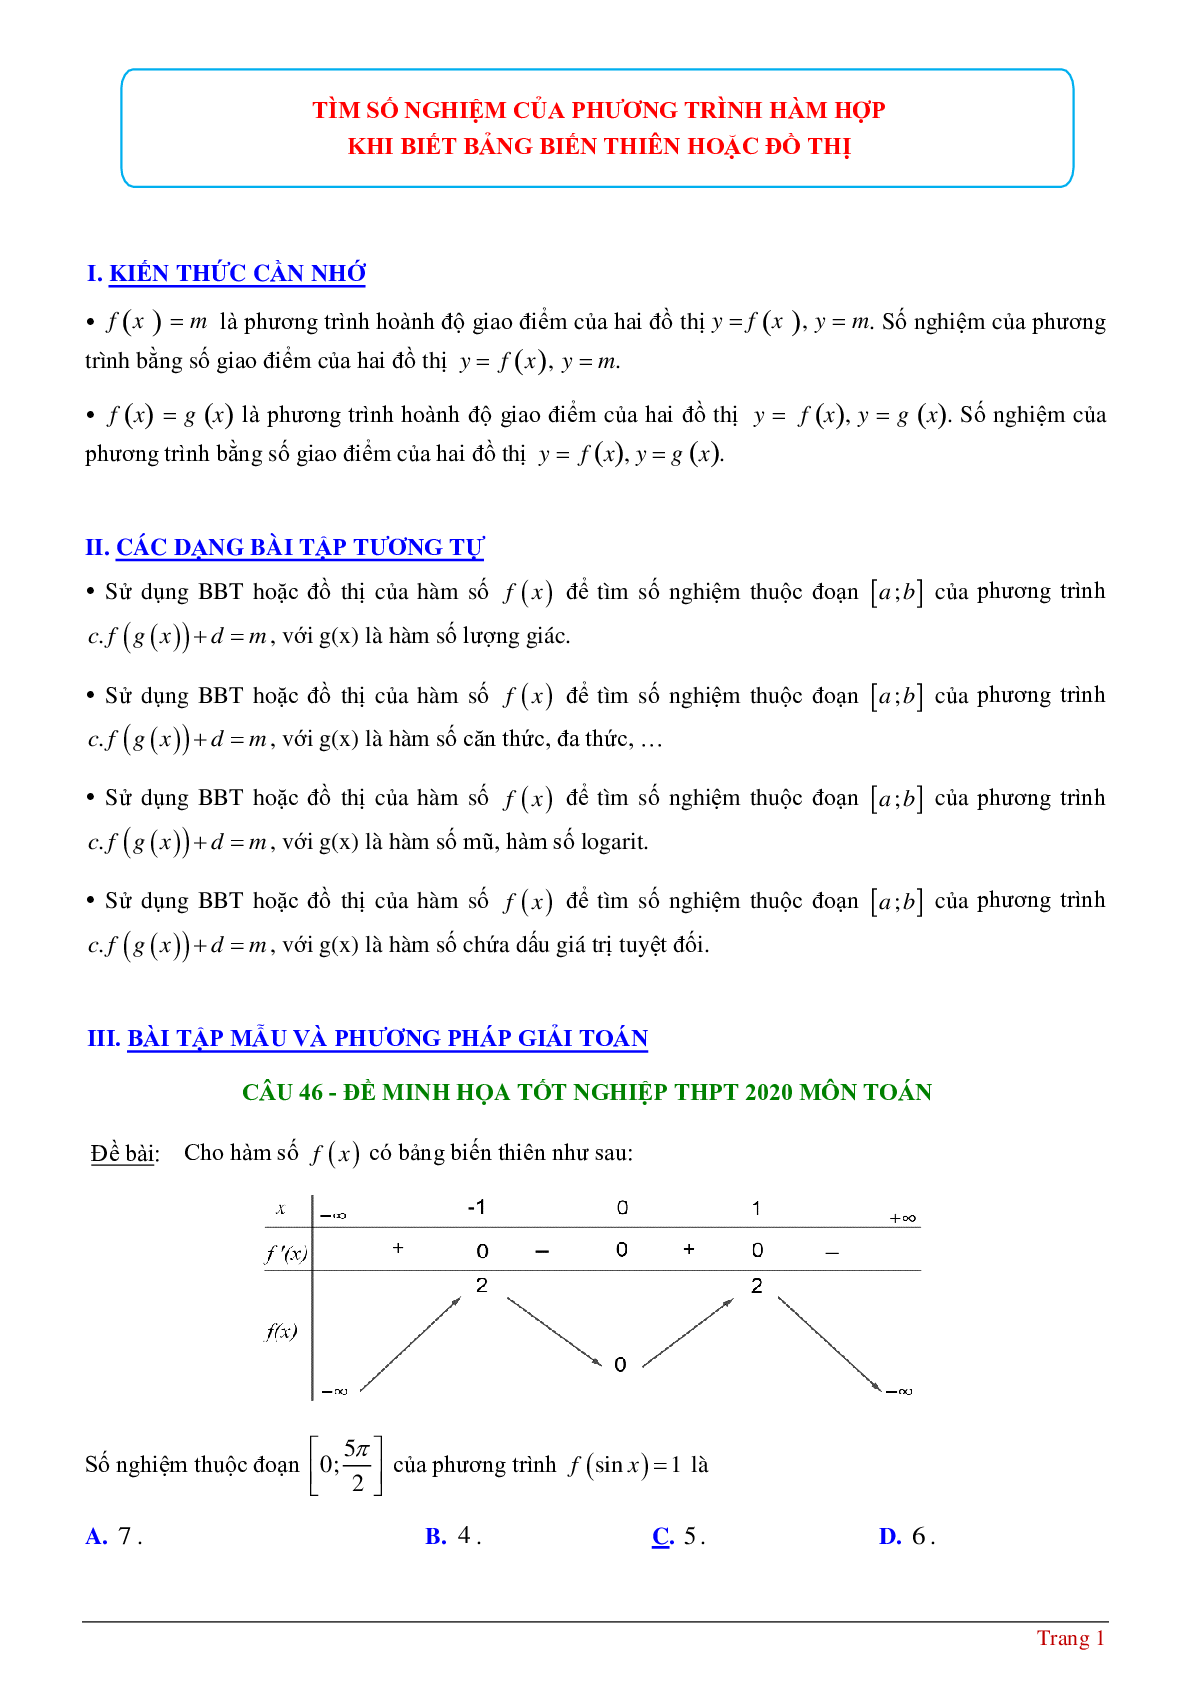 Tìm số nghiệm của phương tình hàm hợp khi biết bảng biến thiên hoặc đồ thị (trang 1)